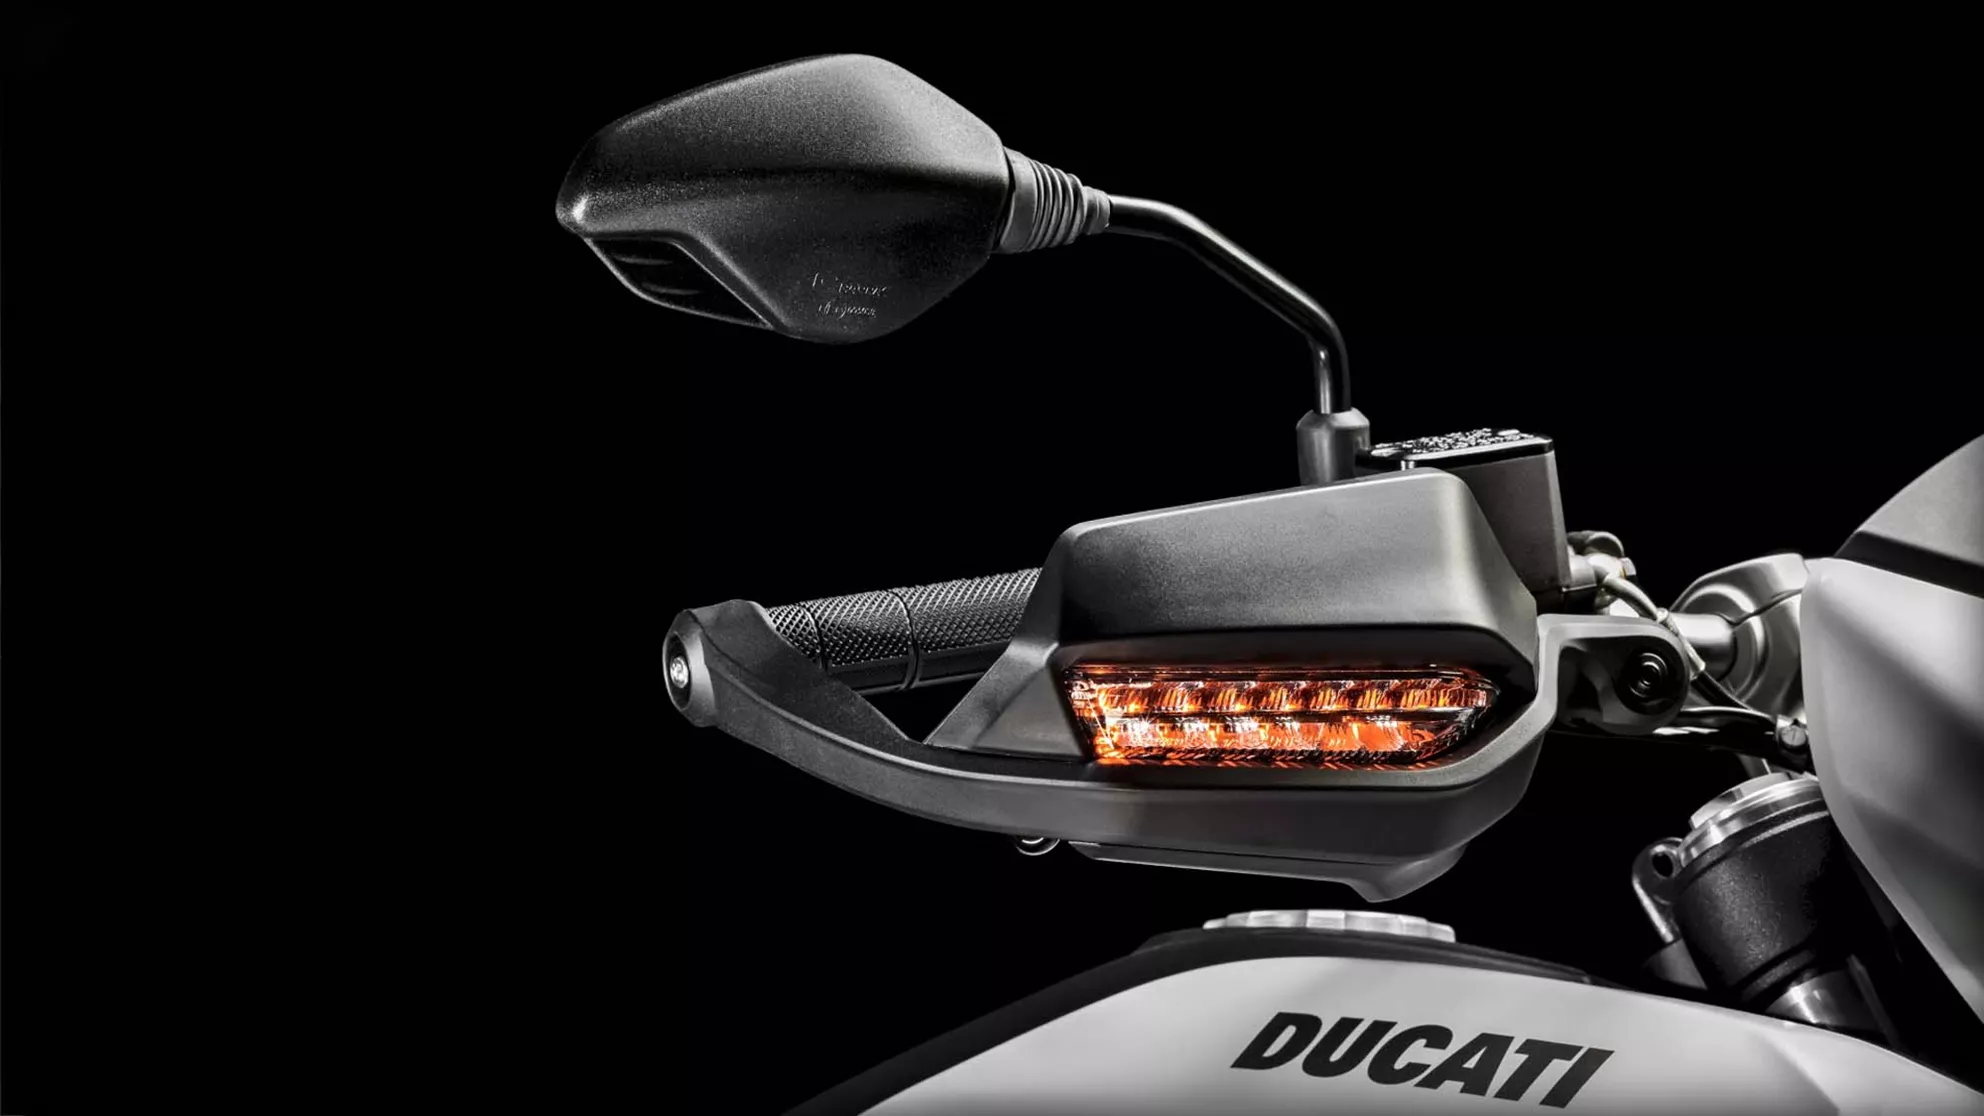 Ducati Hypermotard 939 - Imagen 7